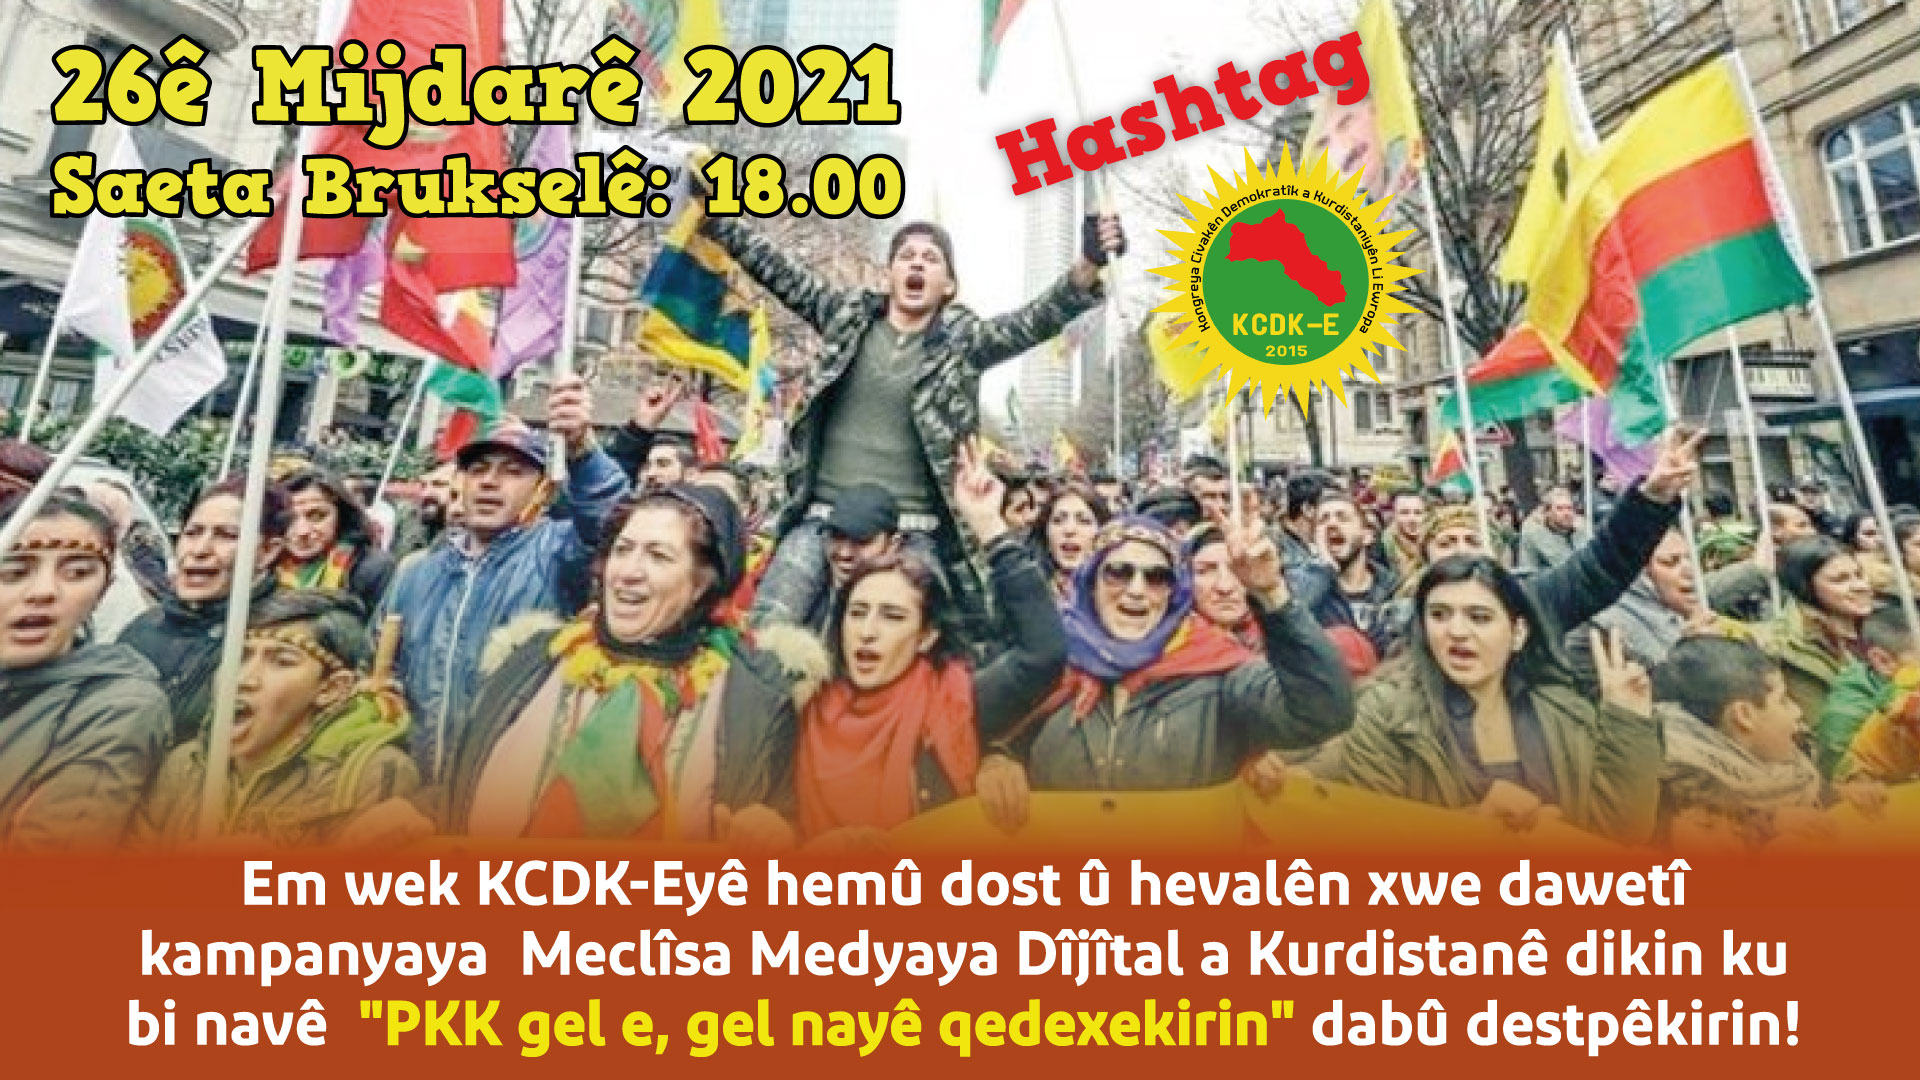 PKK HALKTIR, HALK YASAKLANAMAZ!